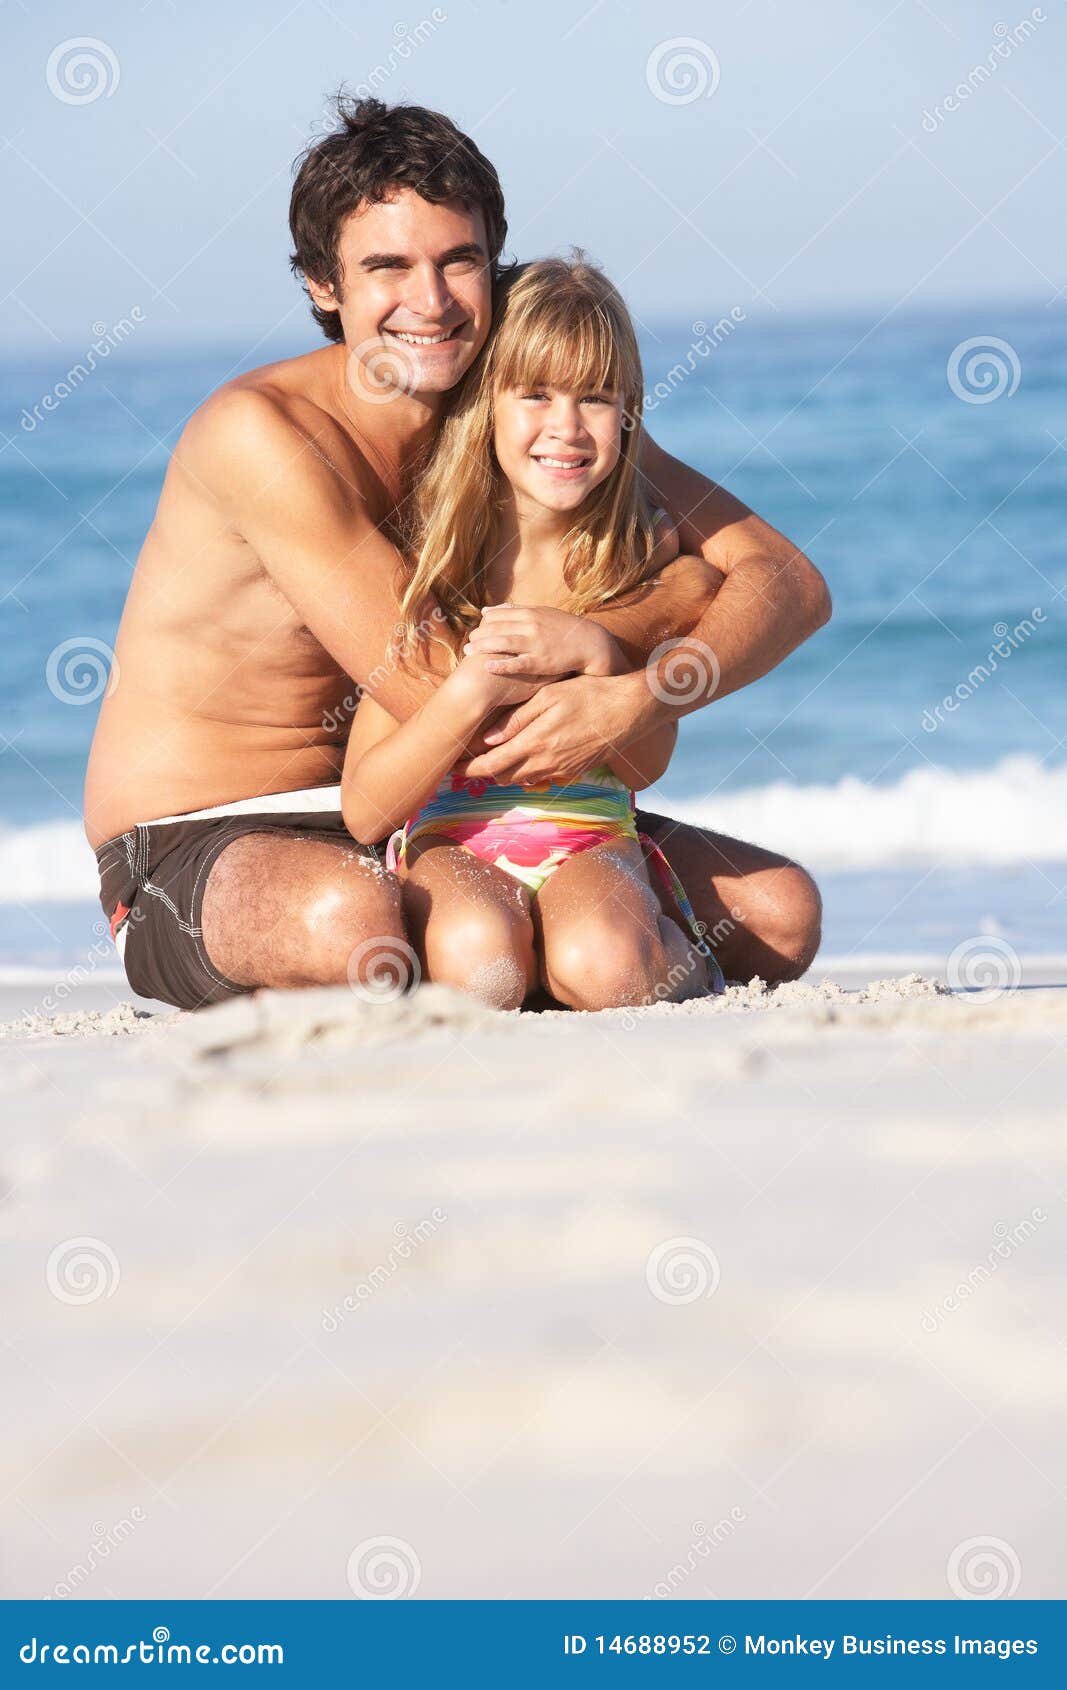 дочка с папой на голом пляже фото 42